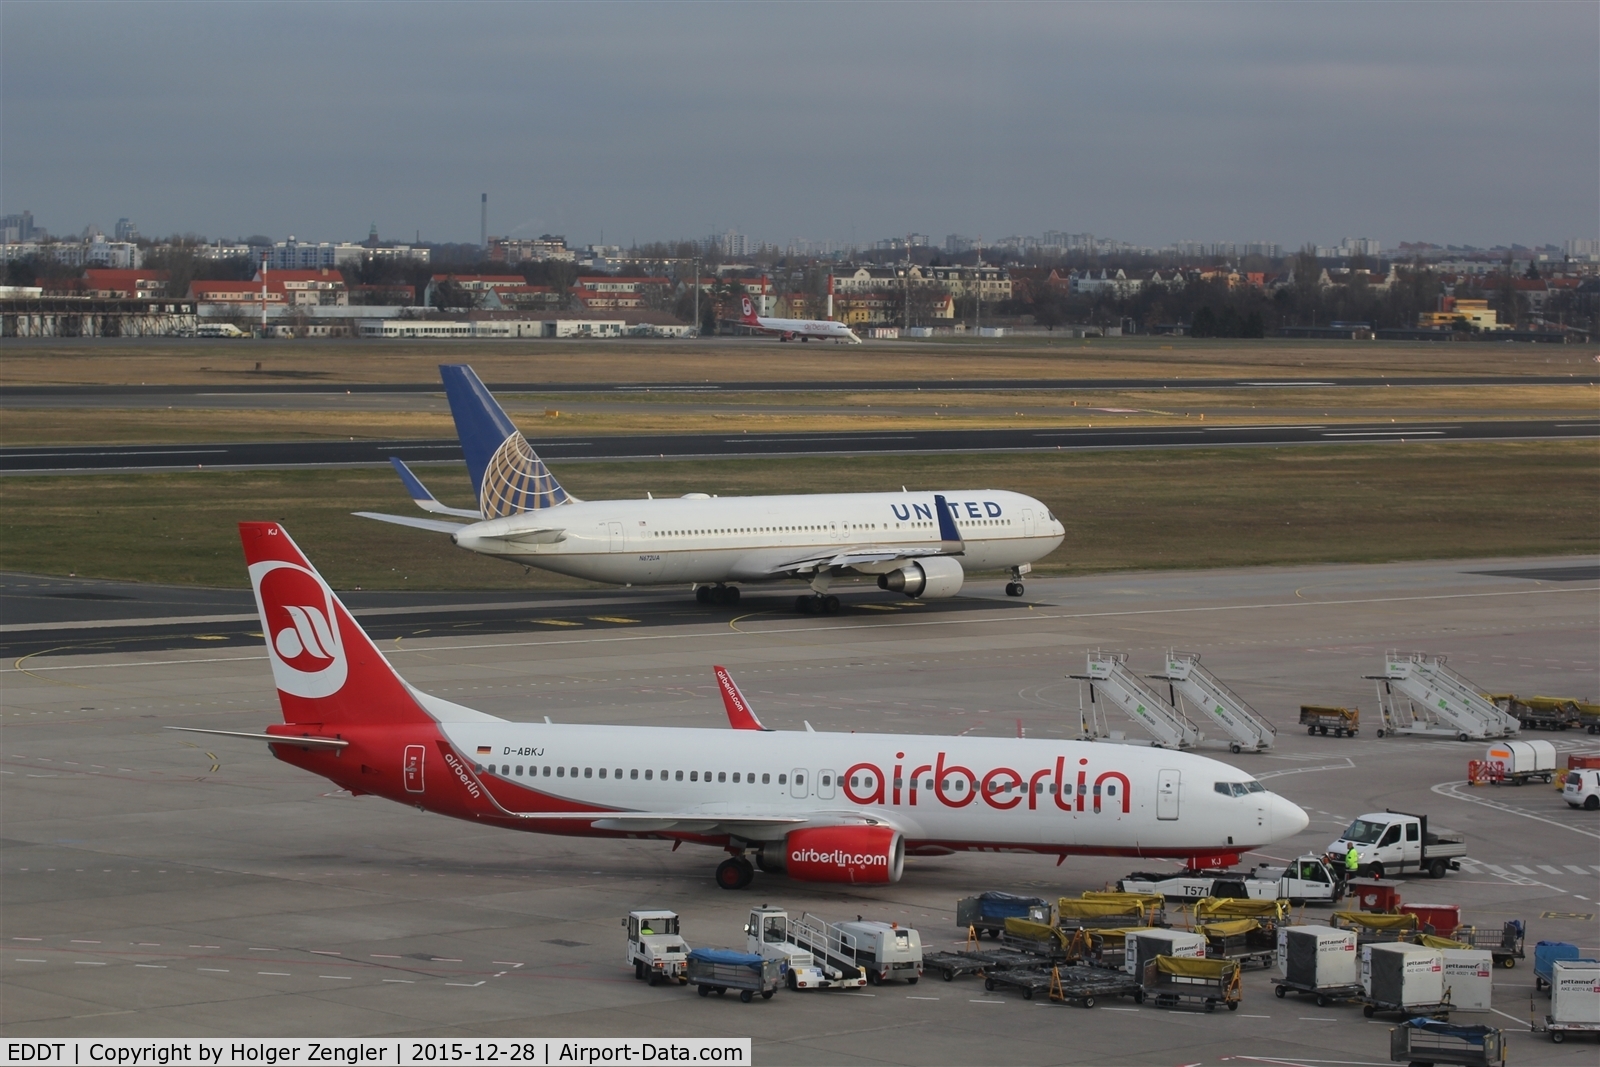 Tegel International Airport (closing in 2011), Berlin Germany (EDDT) - North-eastern view over TXL runways....